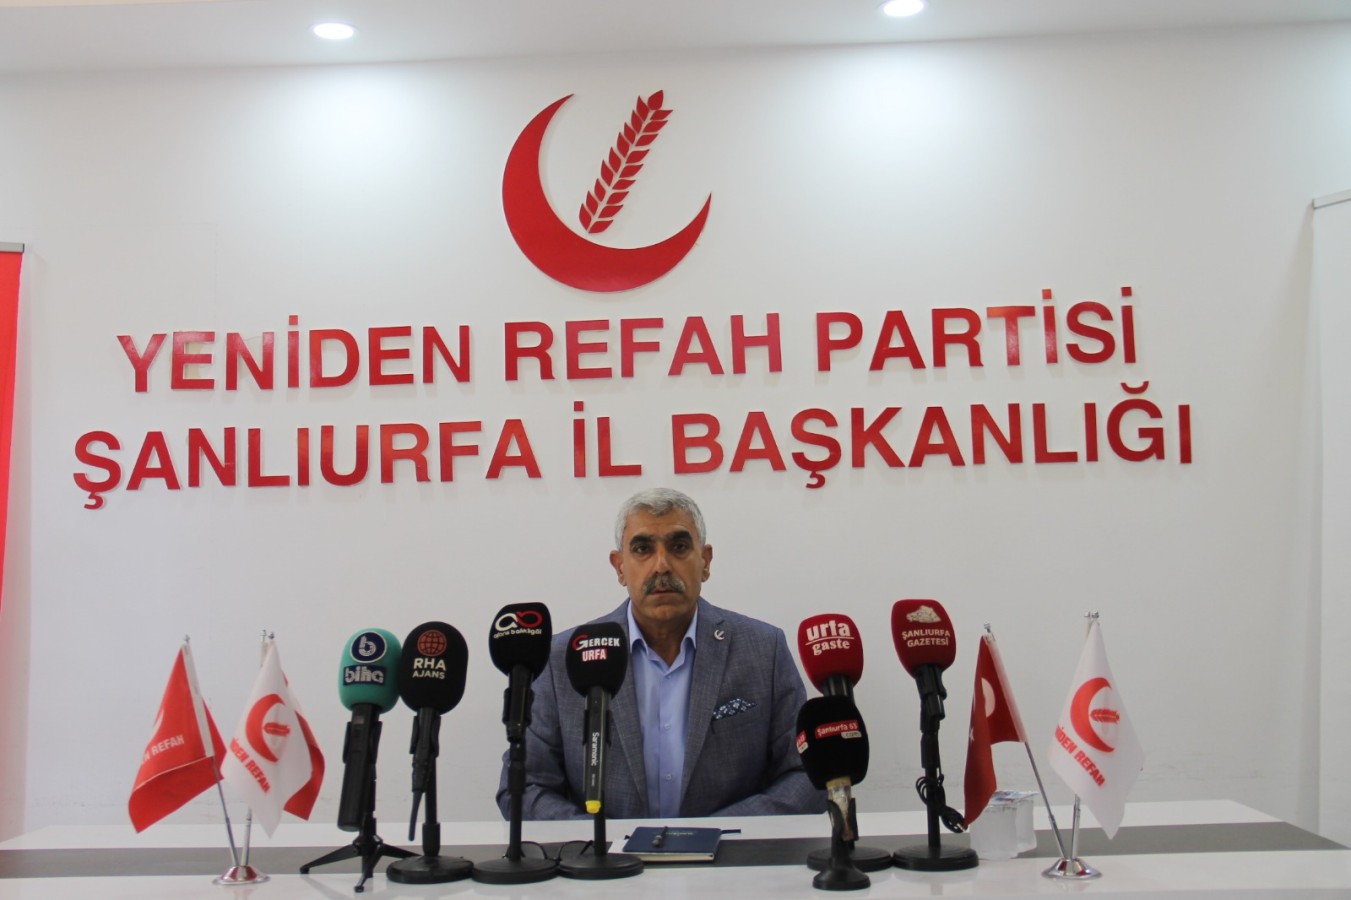 Yeniden Refah Partisi İl Başkanı: Urfa'da değişim zamanı geldi;